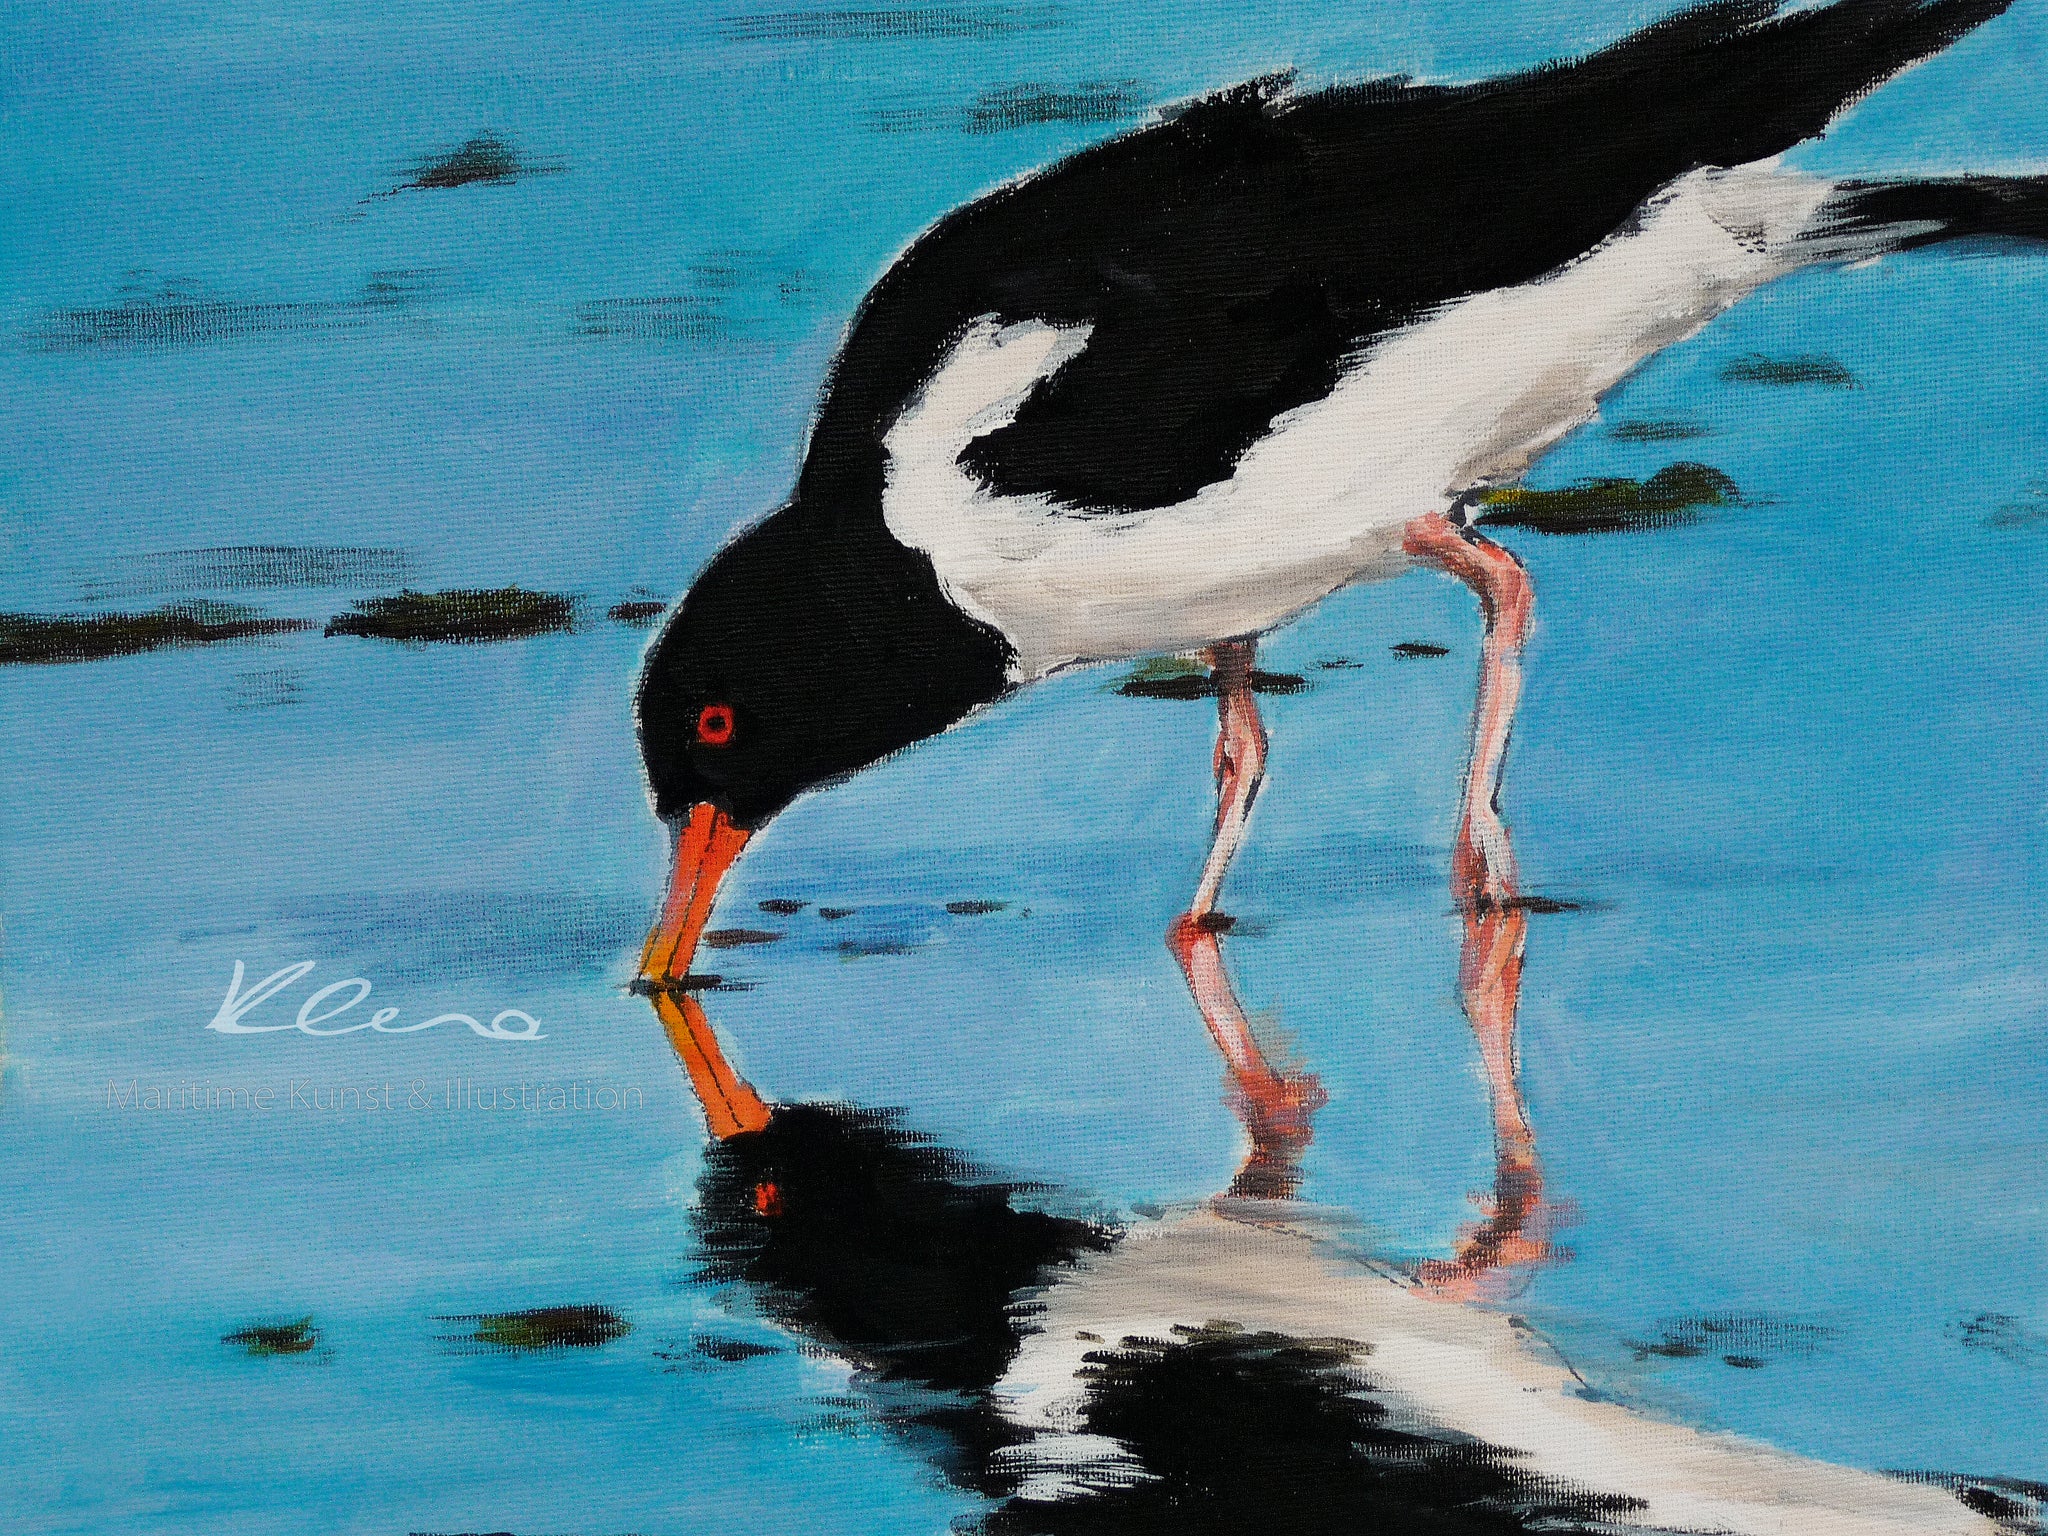 Vögel der Nordsee. Das Bild wurde in einer Acryltechnik angefertigt. Die Farben des Bildes strahlen und erinnern an einen schönen Tag am Meer. Die Austernfischer zählen zu den charakteristischen Vögeln der Nordsee. Künstlerin: Susanne Klena.